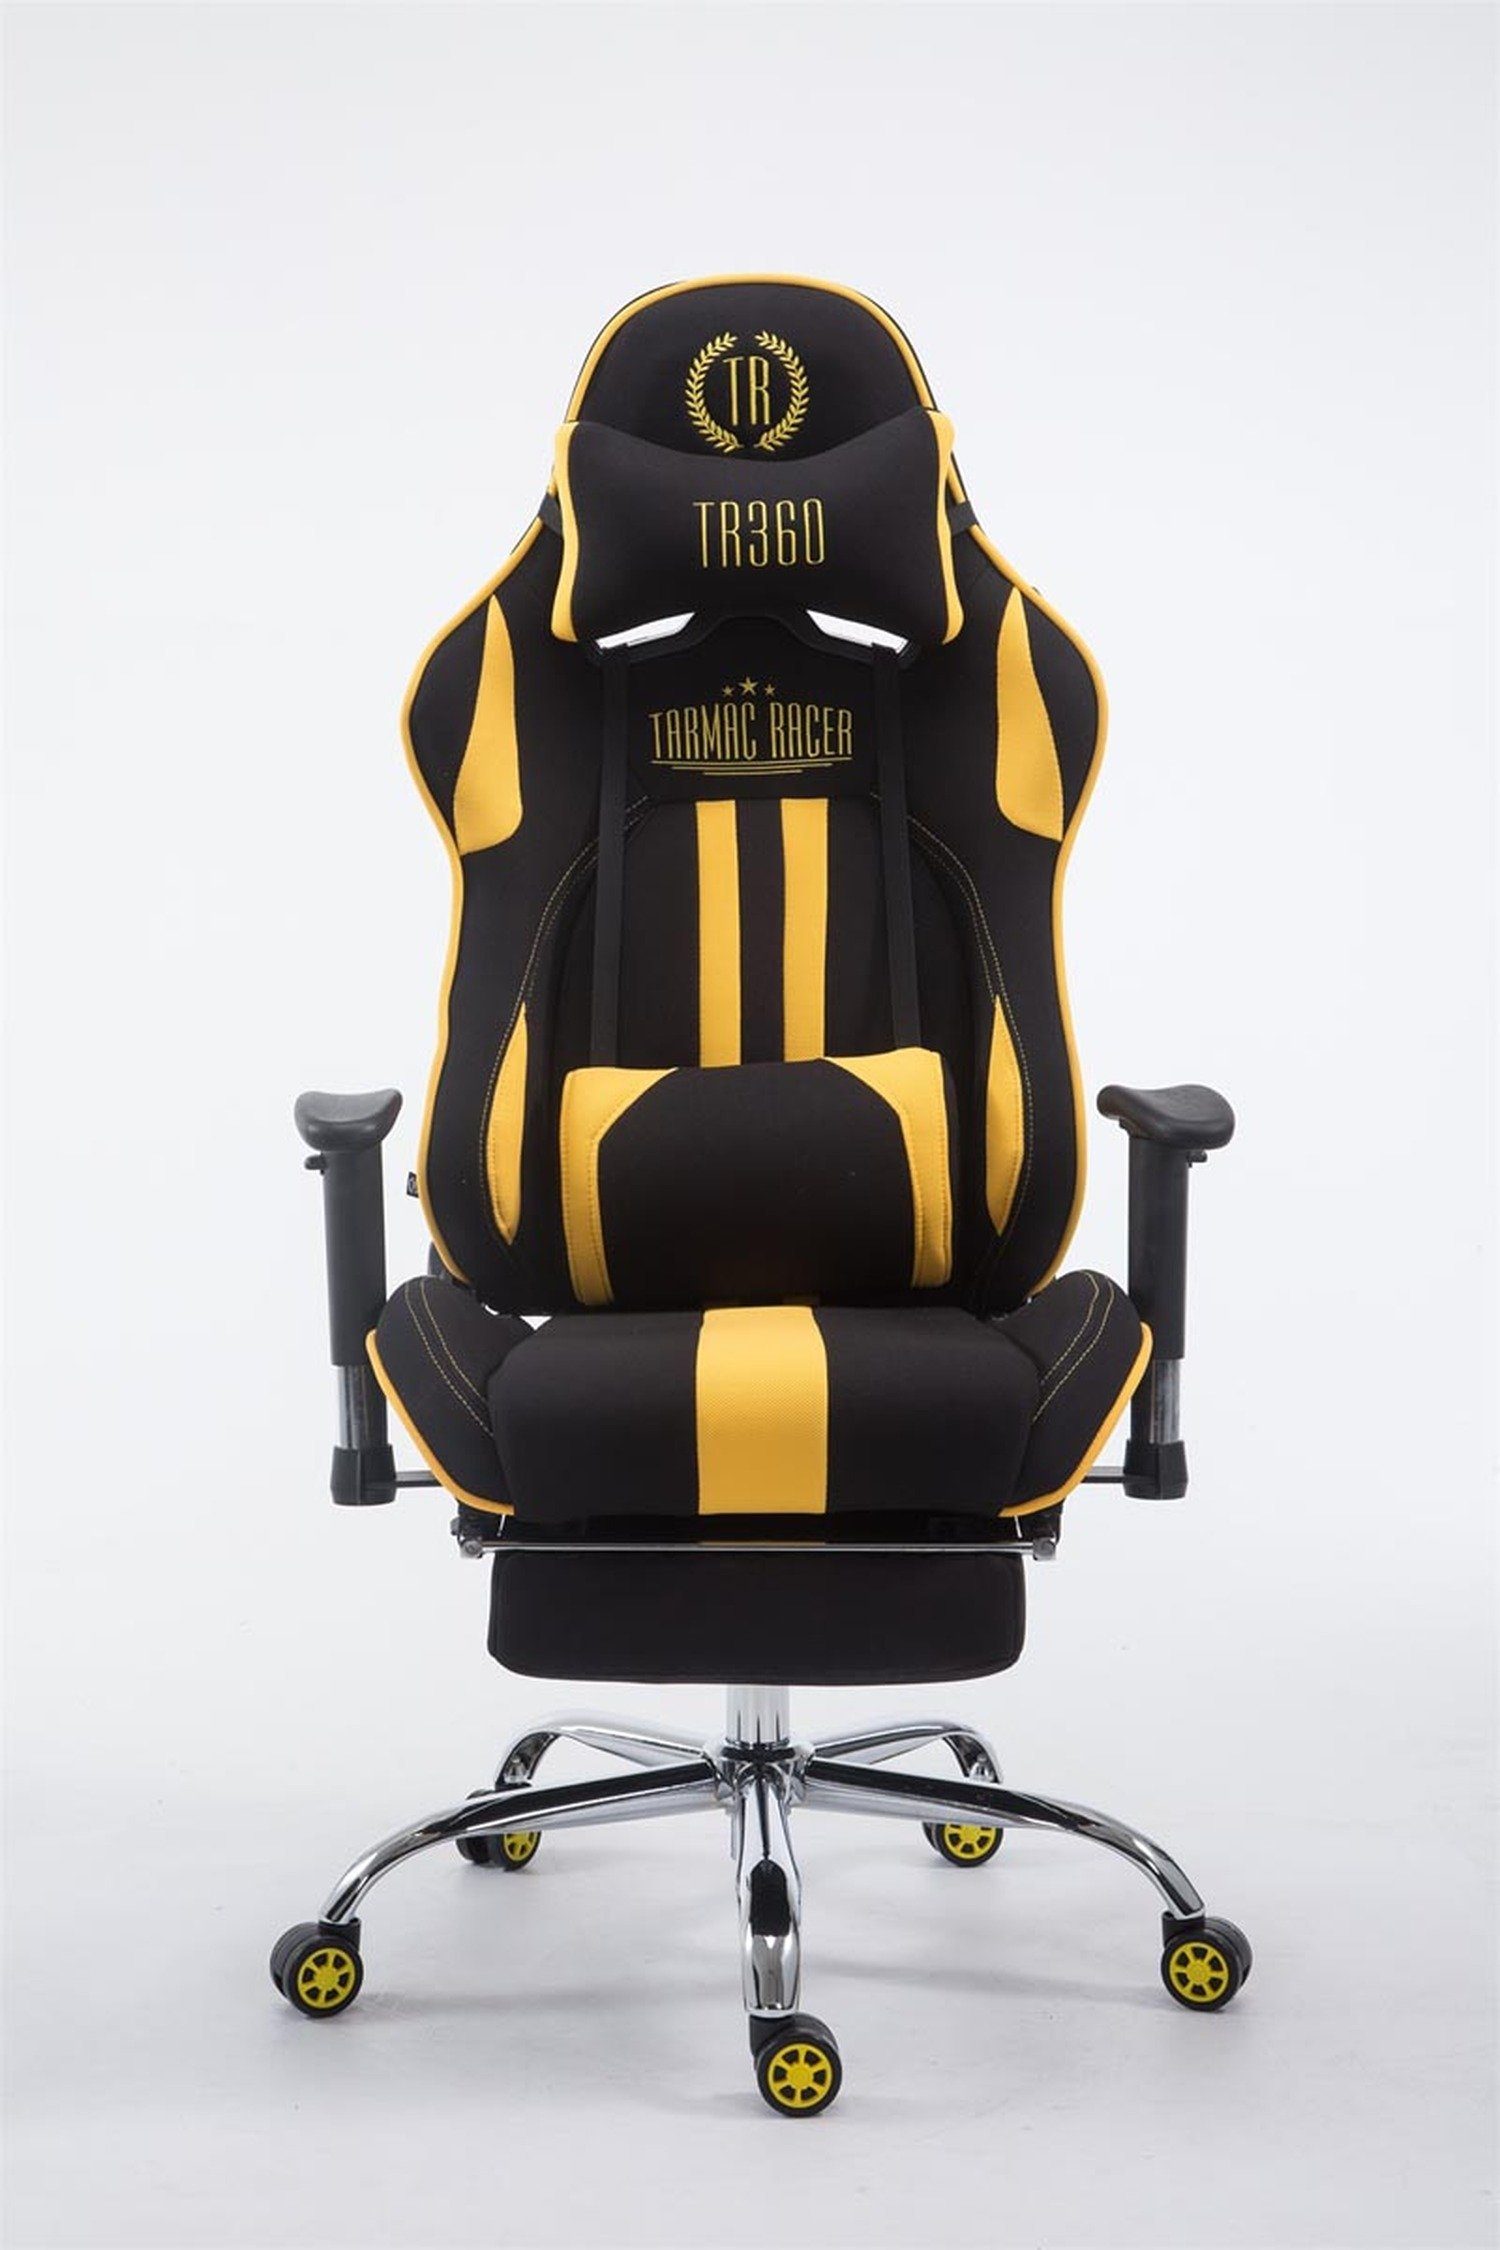 TPFLiving Gaming-Stuhl Limitless Racingstuhl, Chefsessel), Gamingstuhl, höhenverstellbar Drehstuhl, schwarz/gelb (Schreibtischstuhl, chrom Metall 360° mit und - bequemer drehbar Gestell: - Sitzfläche: Stoff Rückenlehne